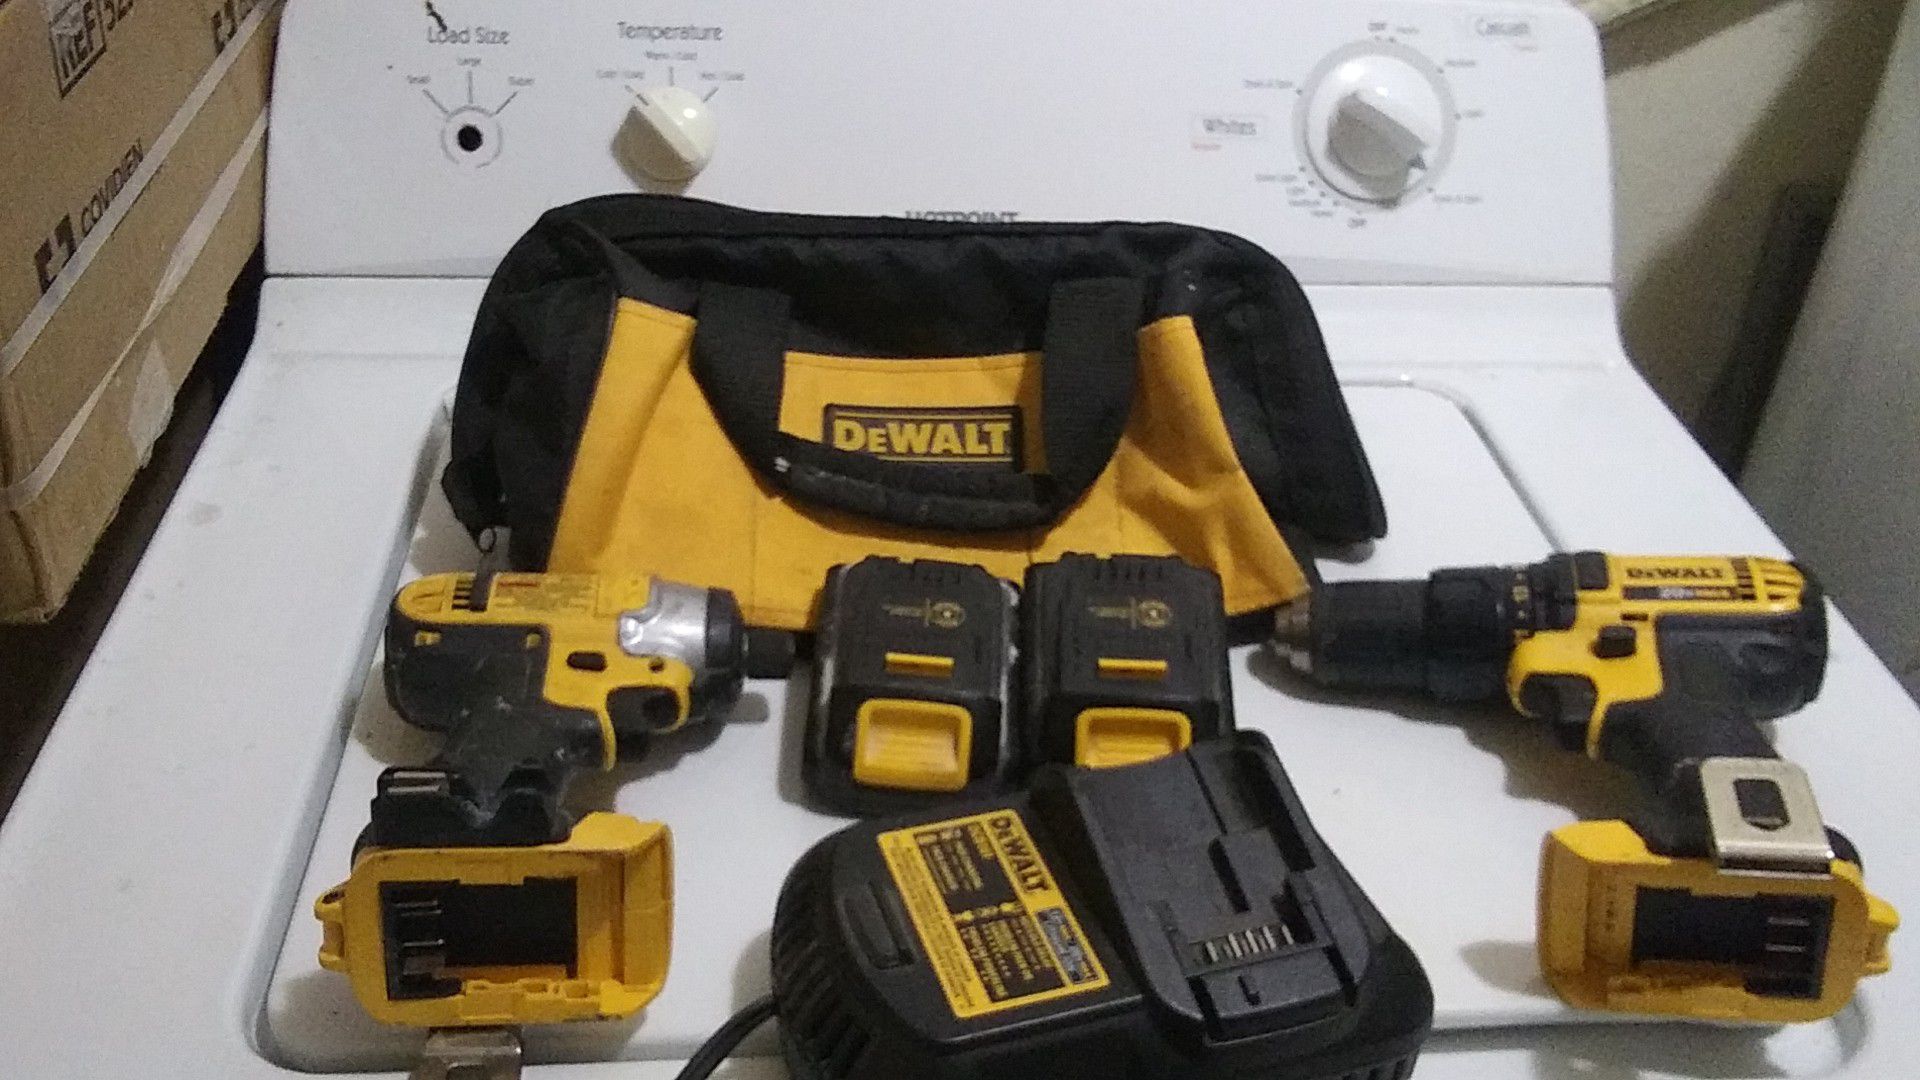 Dewalt tool kit